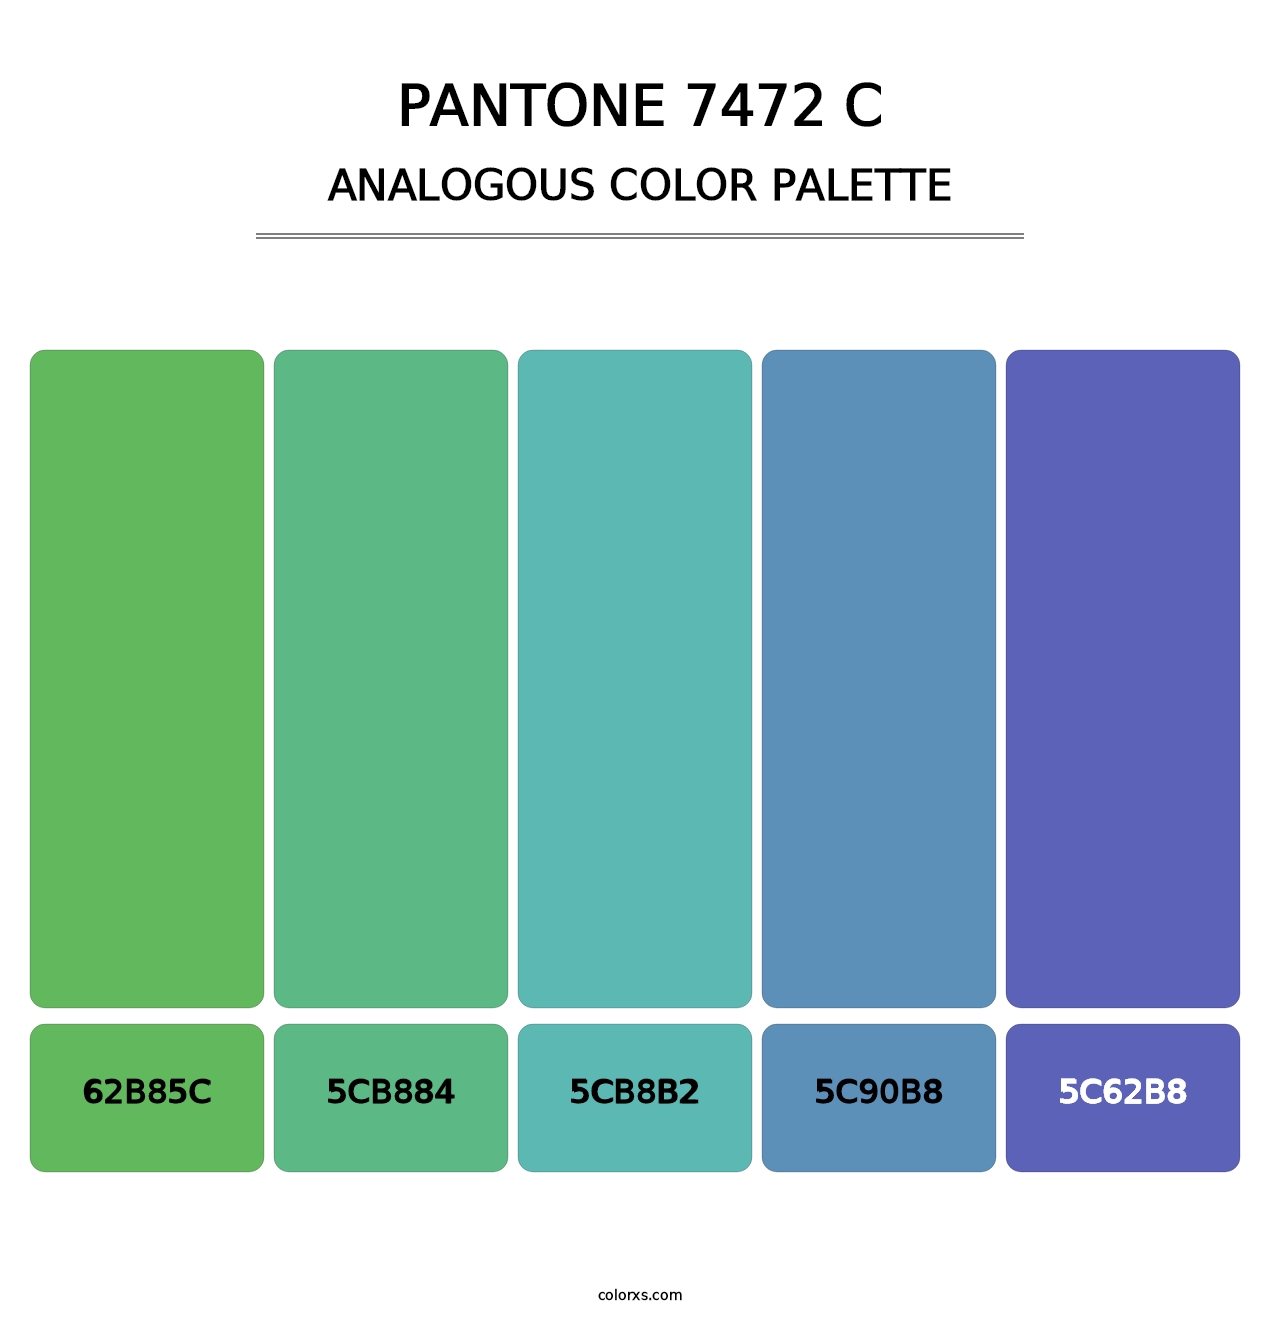 PANTONE 7472 C - Analogous Color Palette